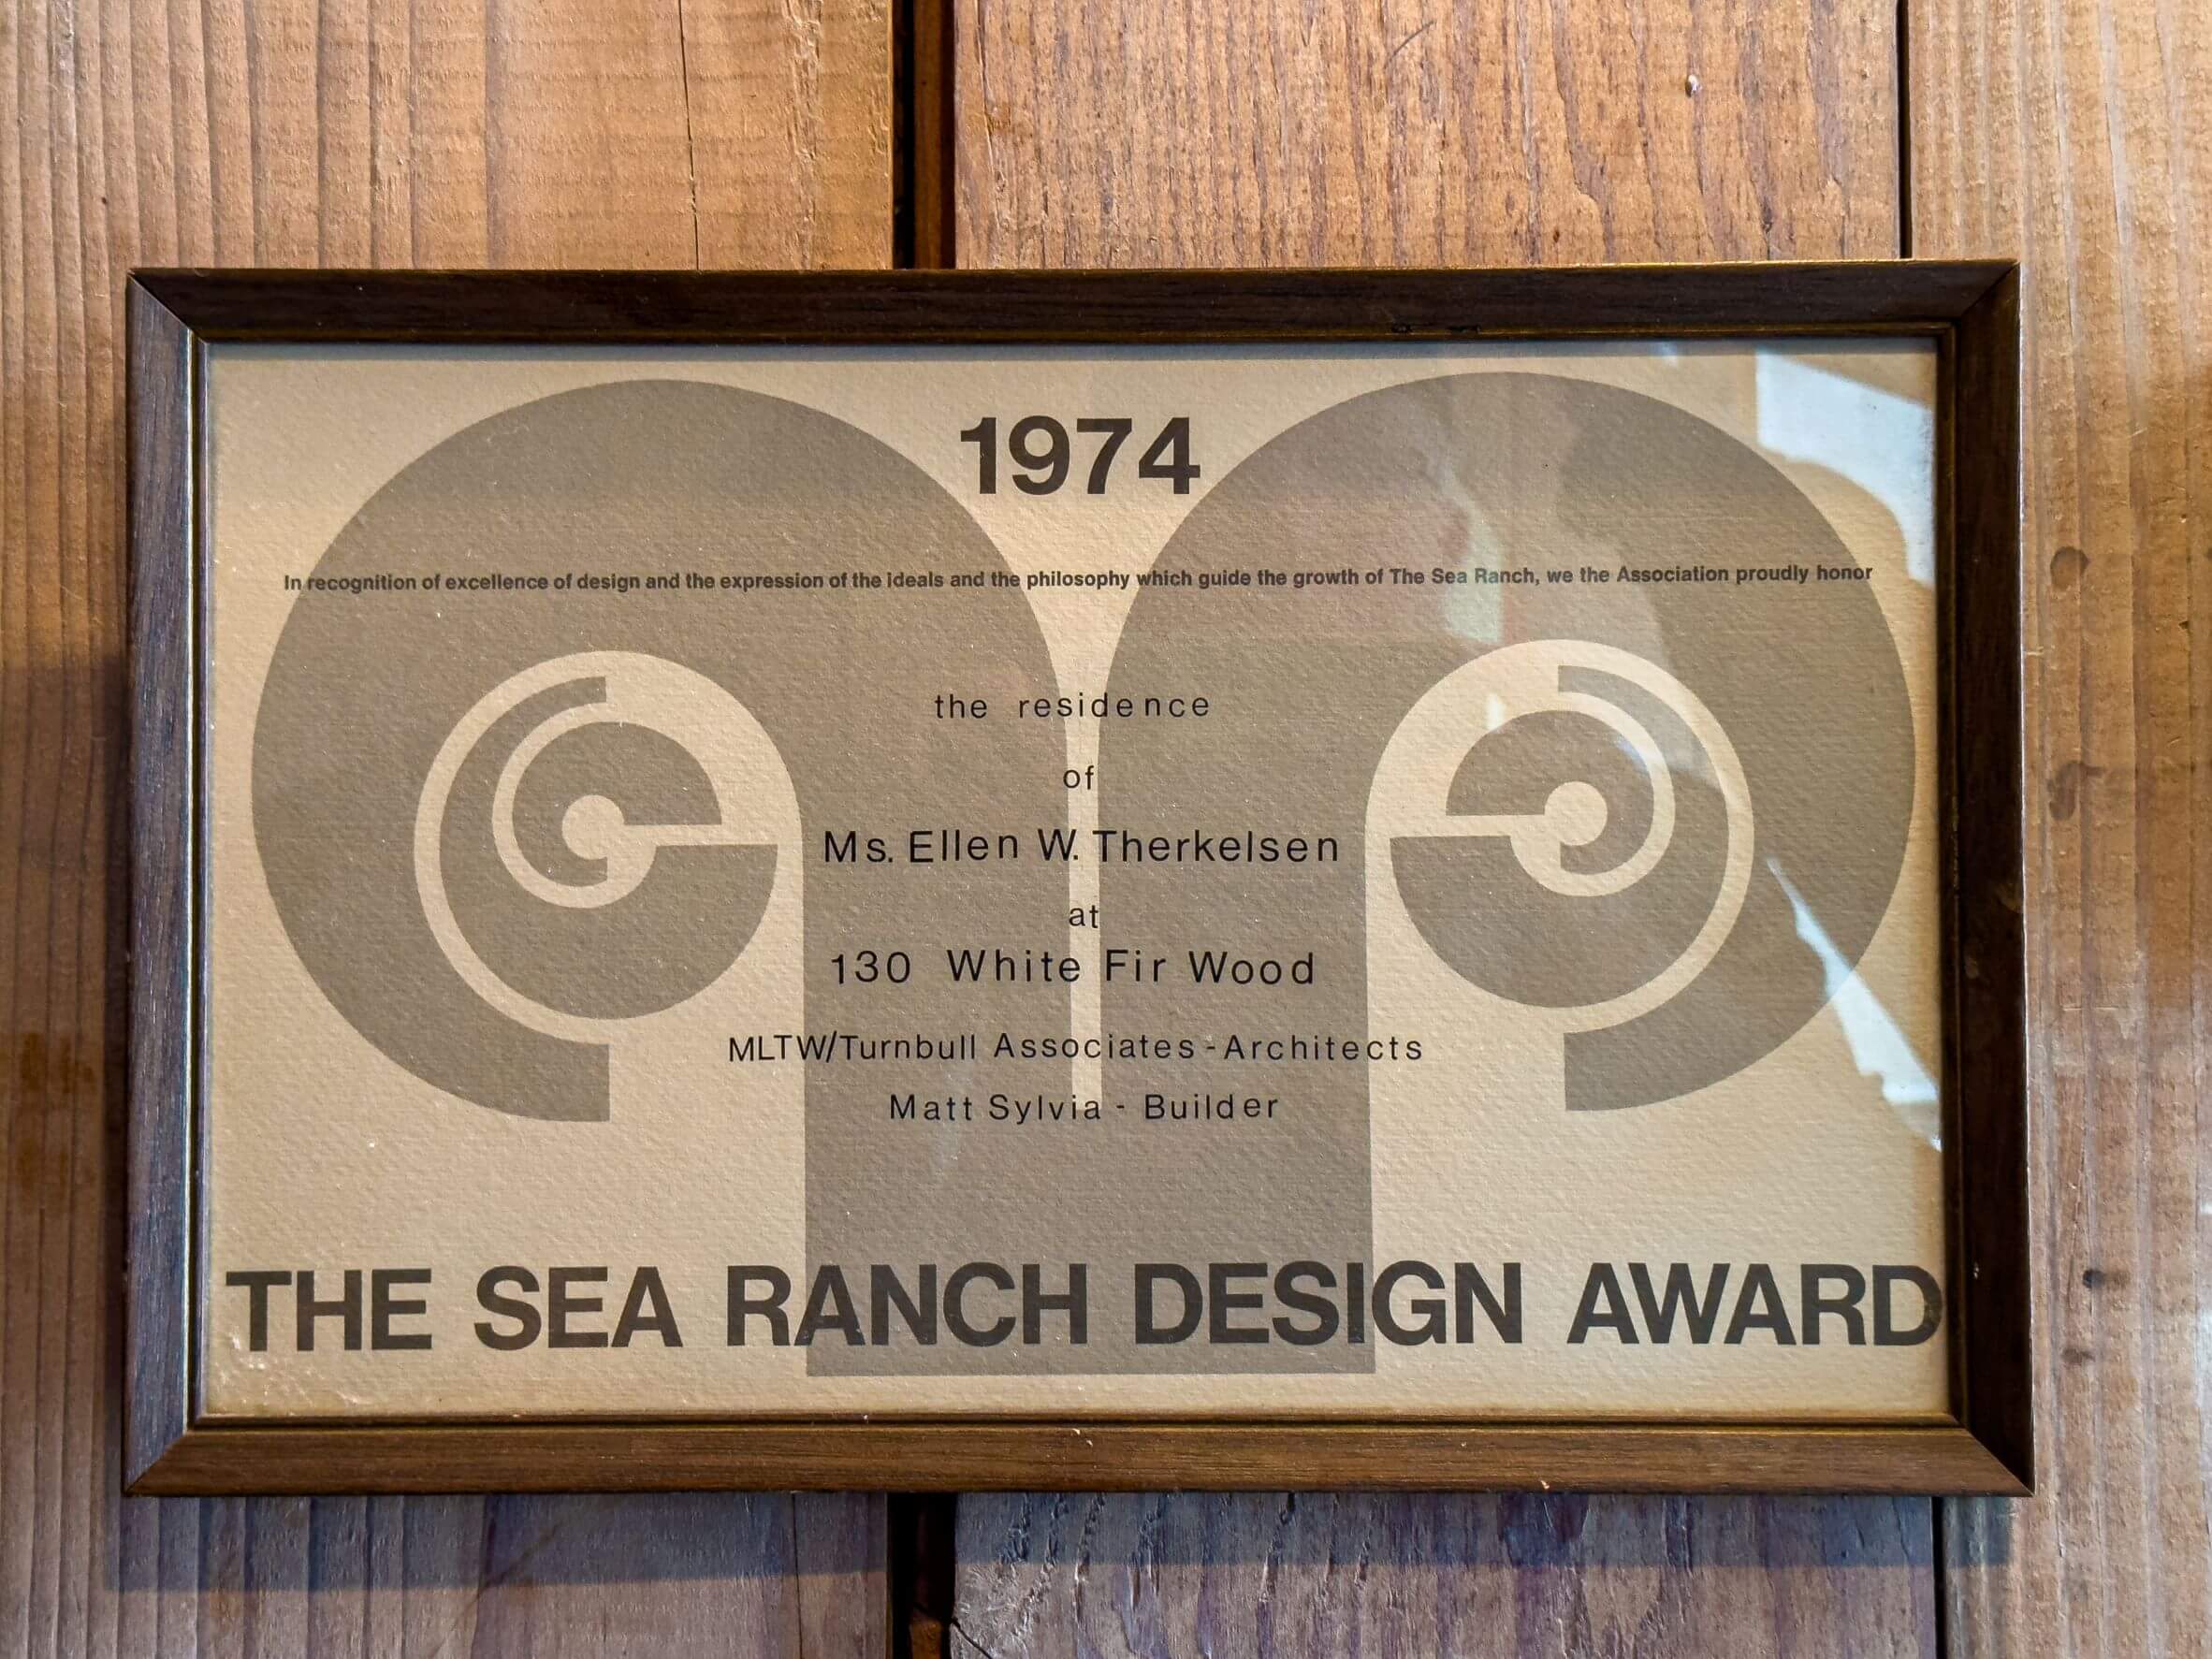 Seaview : The Sea Ranch Design Award 1974